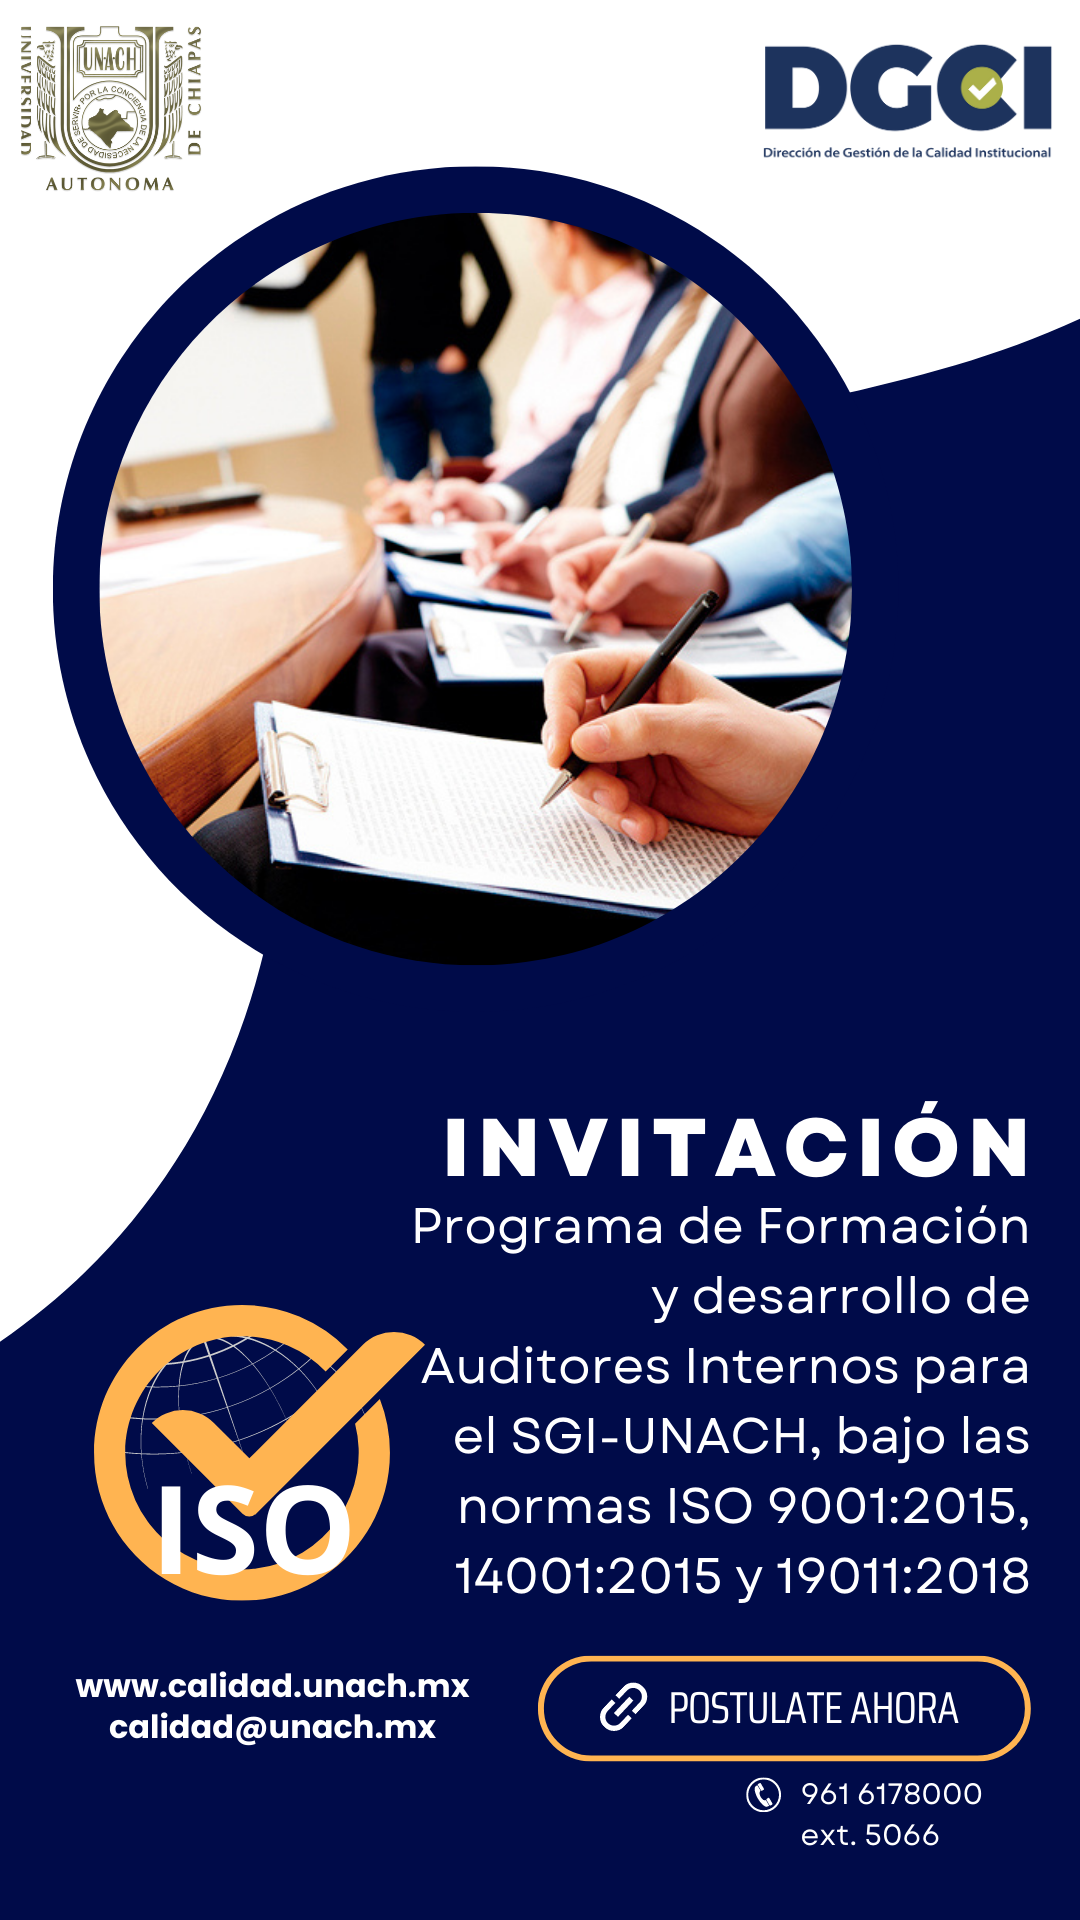 Invitación - Programa de Formación y desarrollo de Auditores Internos para el SGI-UNACH